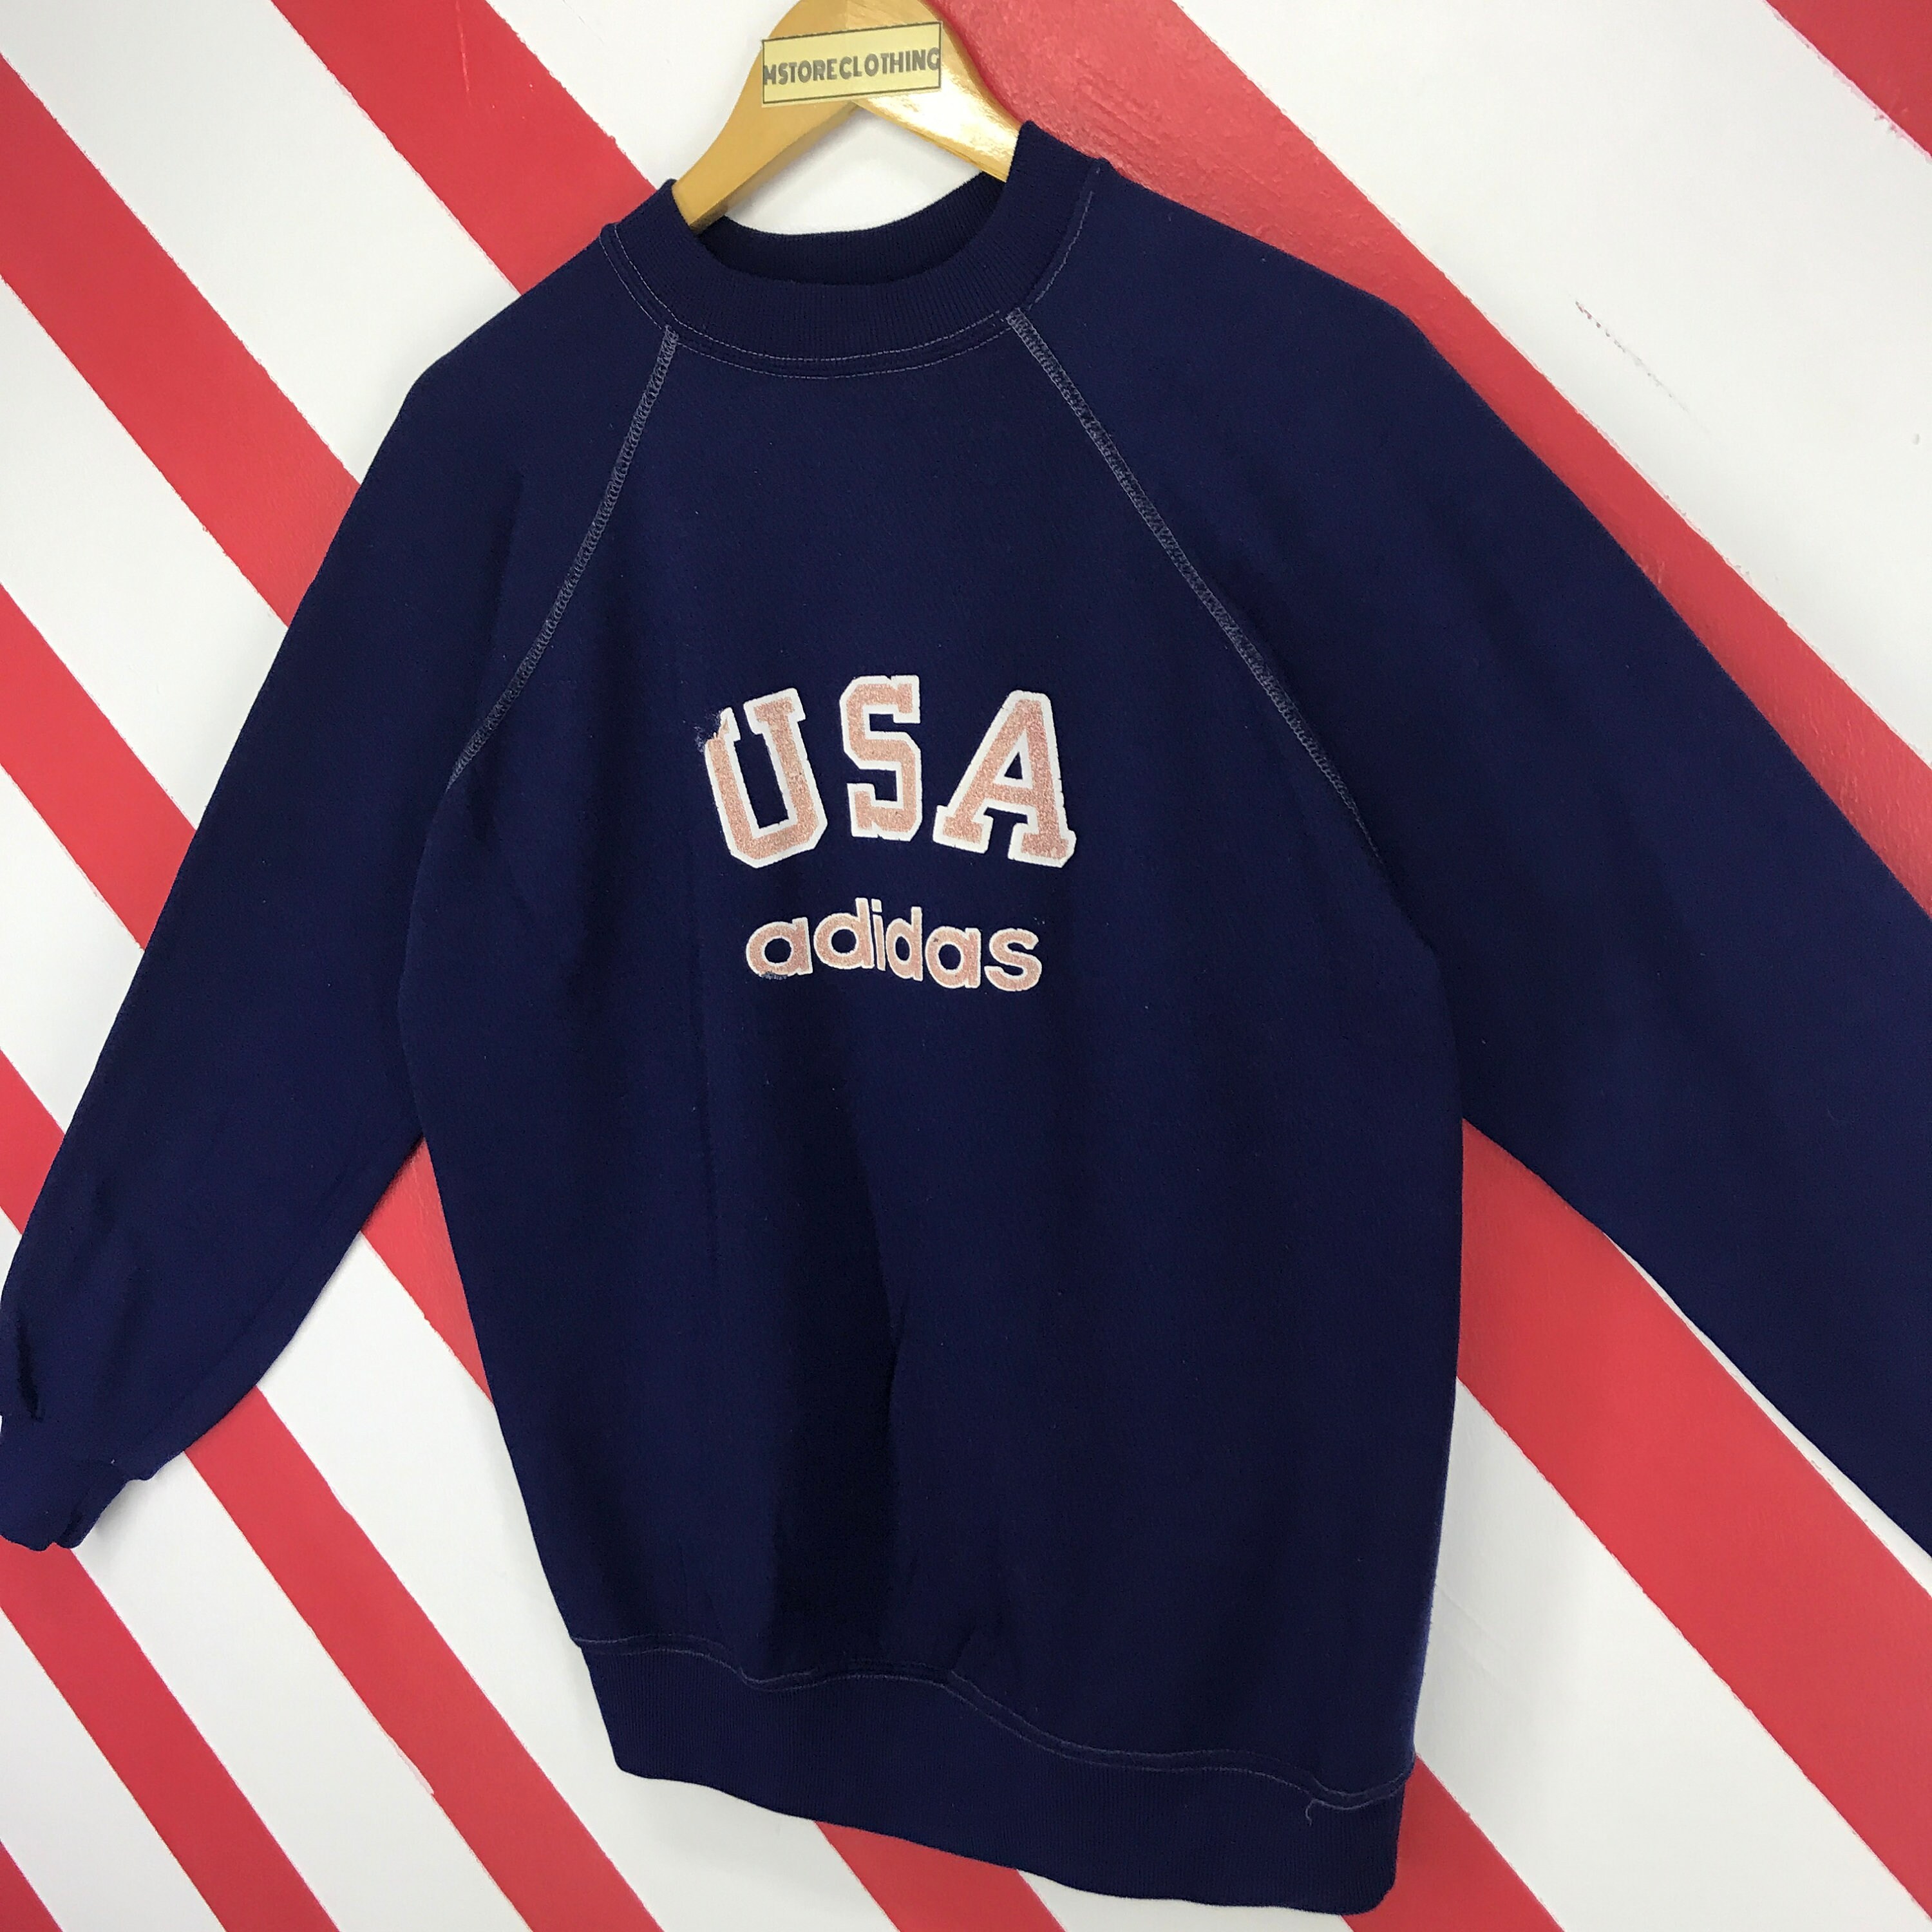 Vintage 80s Adidas Sweatshirt Crewneck Adidas Trefoil Sweater | Etsy